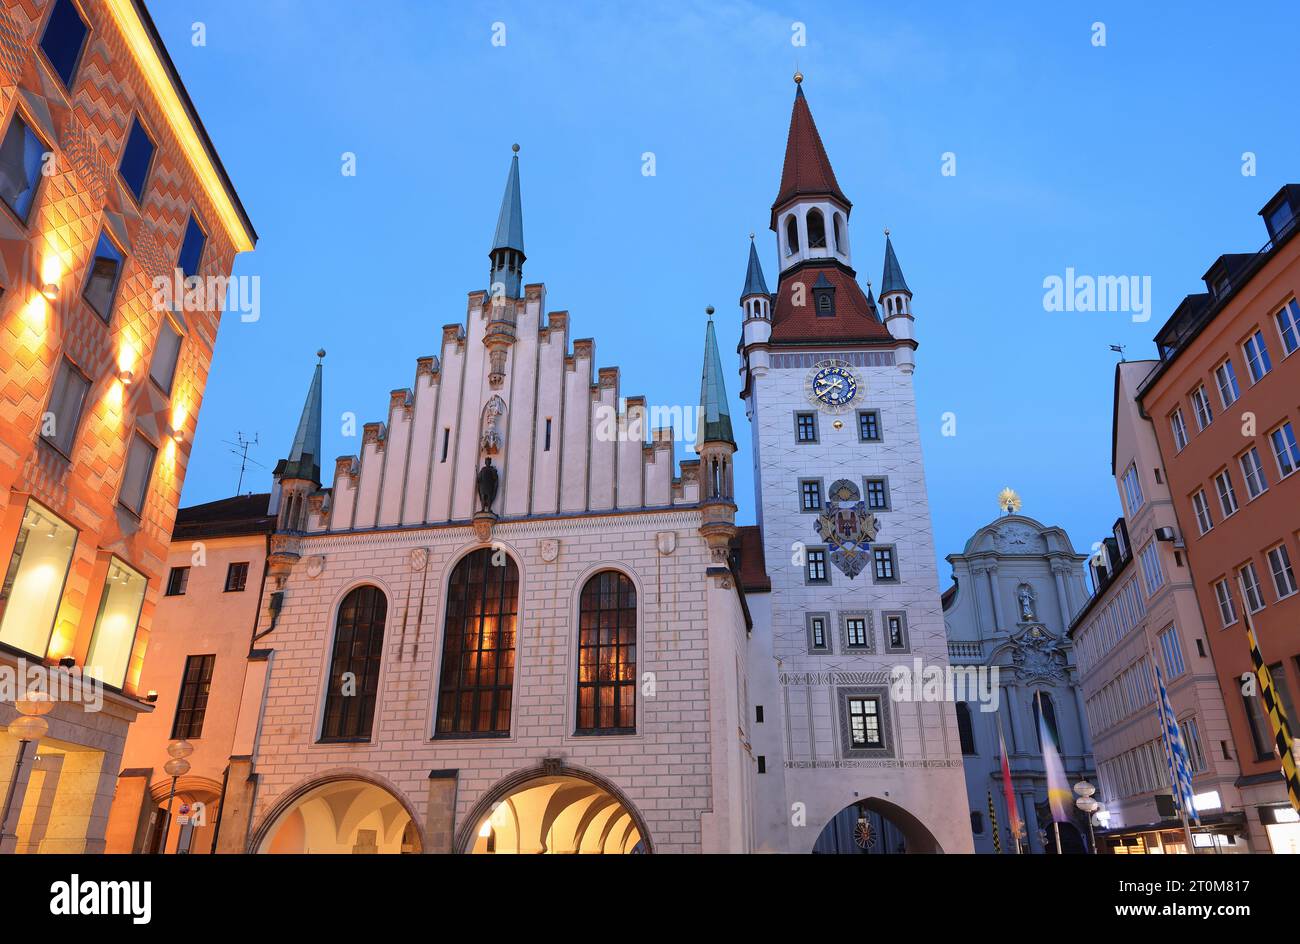 La place de Marie illuminée au crépuscule à Munich, en Allemagne, avec un ancien hôtel de ville et d'autres bâtiments Banque D'Images